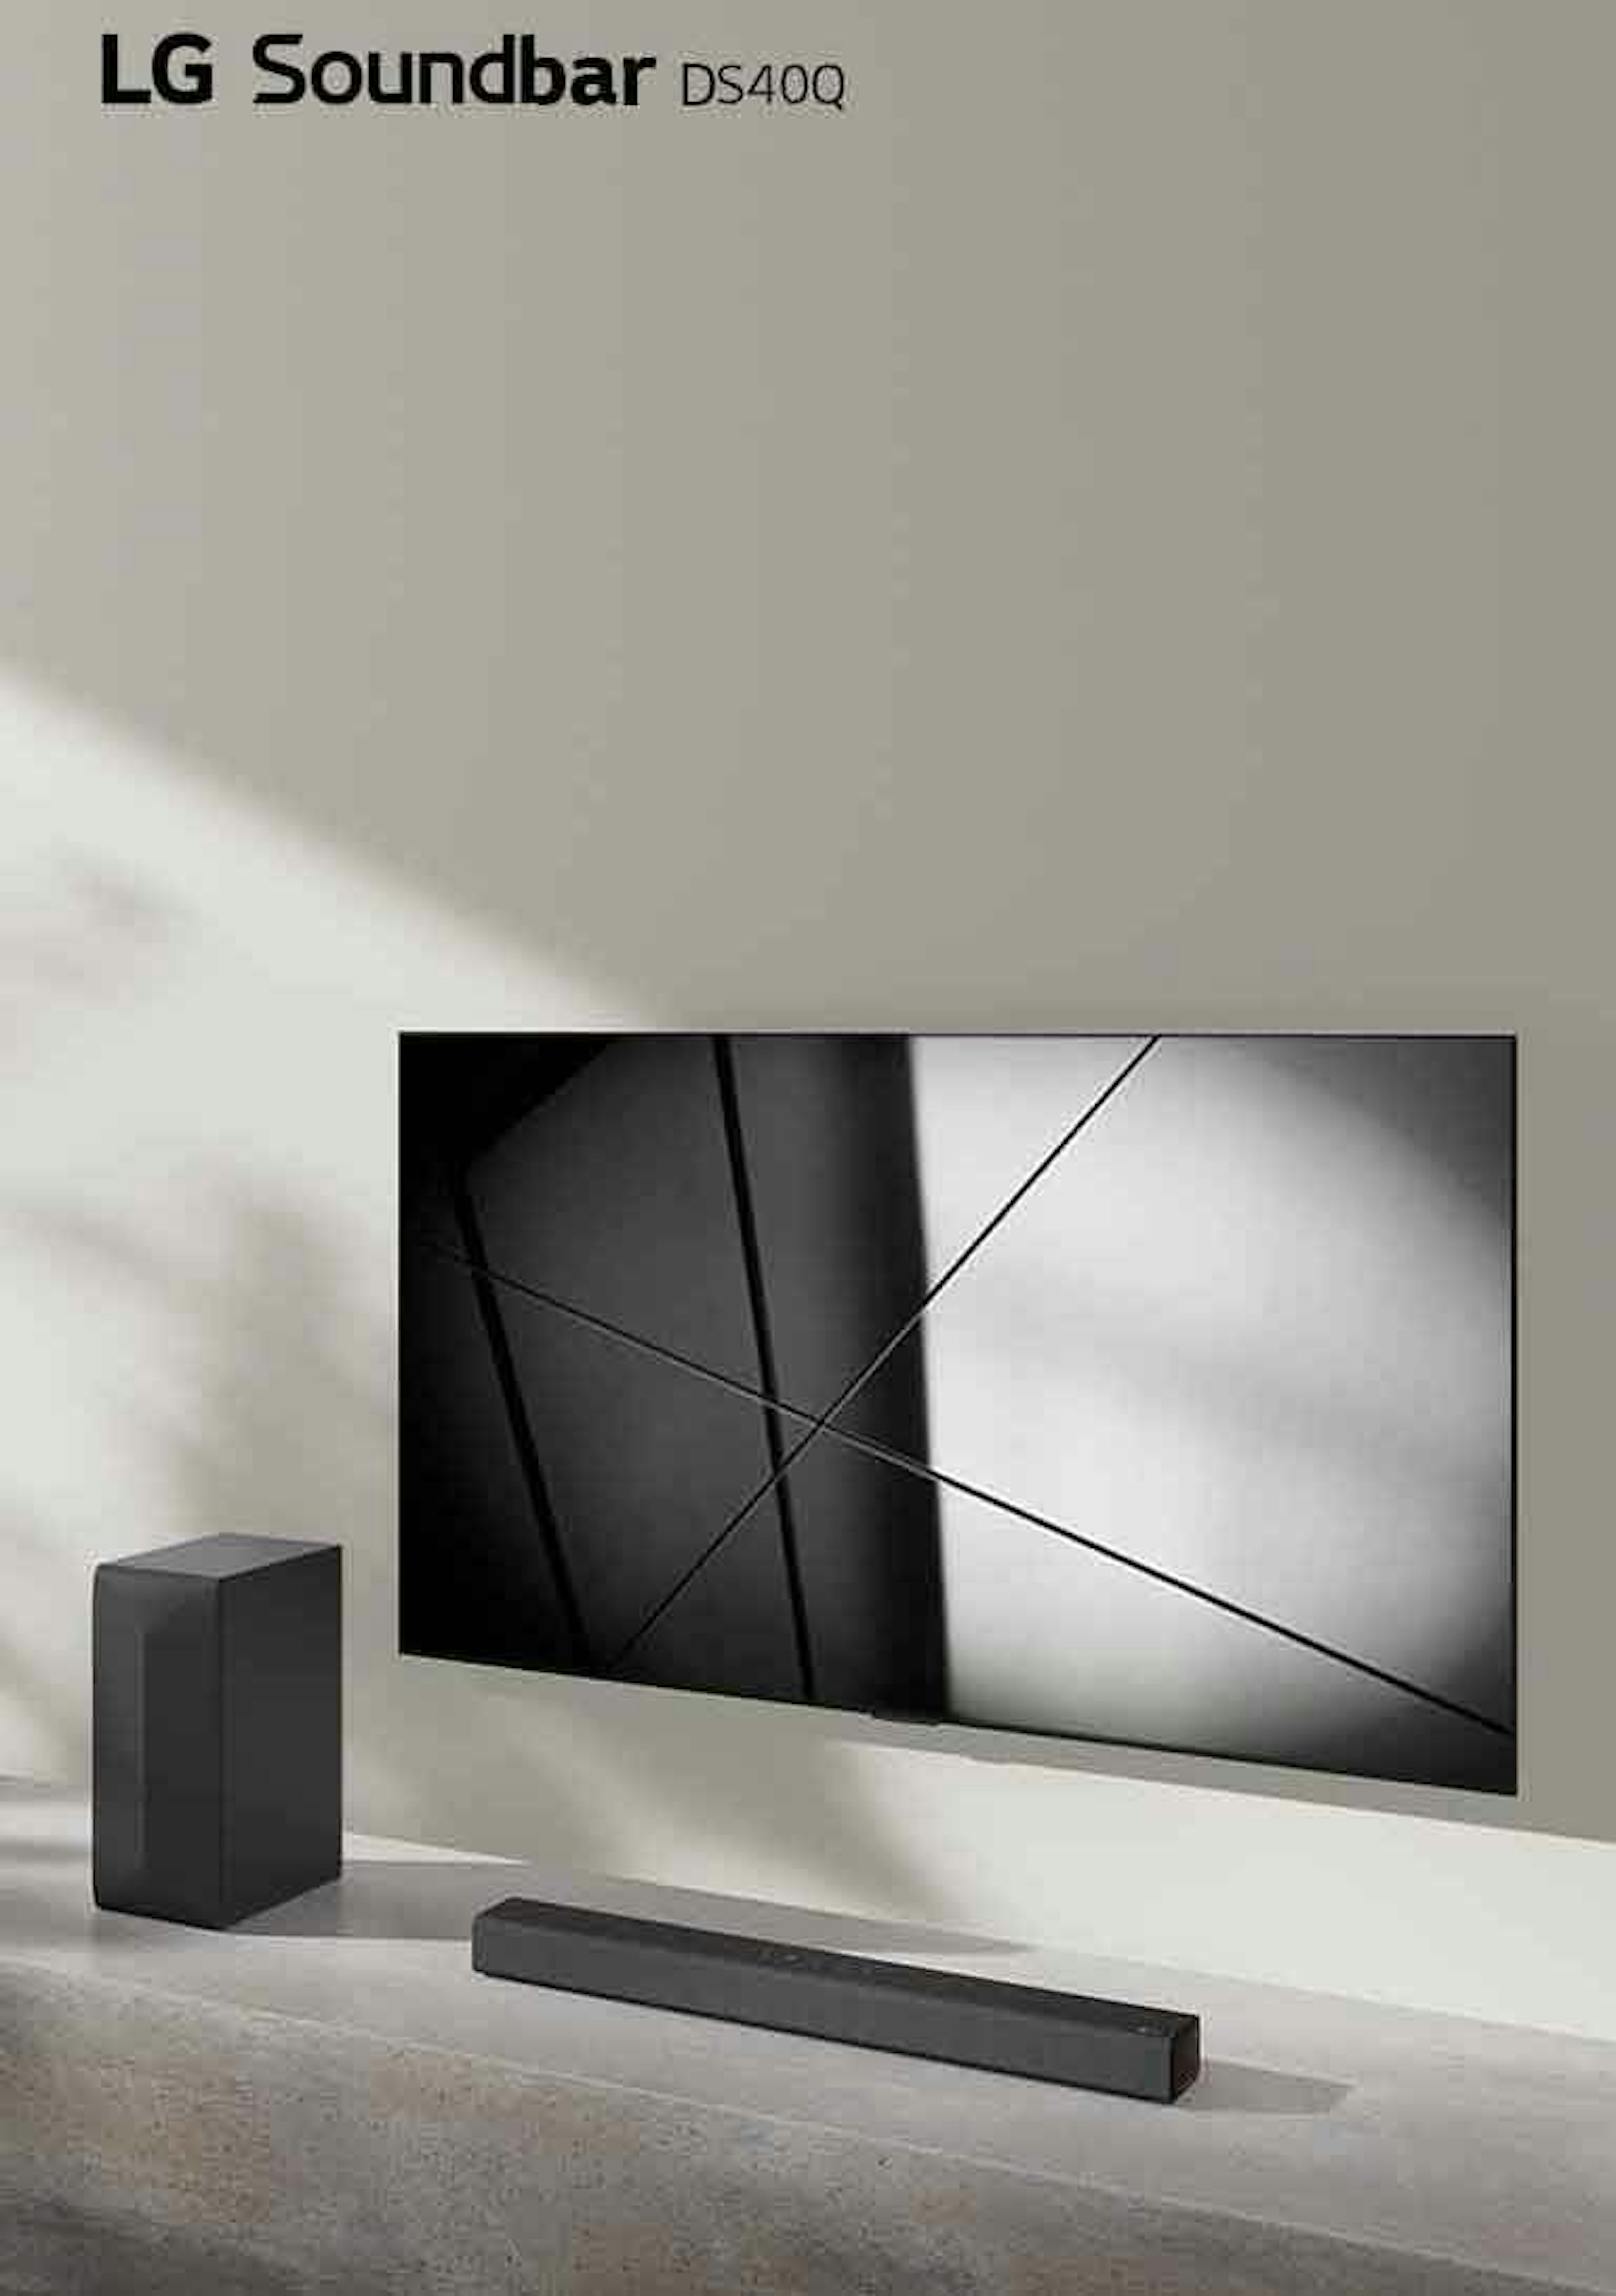 Für die kleinere Geldbörse, aber dennoch mit Top-Soundqualität, ist die LG Soundbar DS40Q die perfekte Ergänzung für den LG TV. 